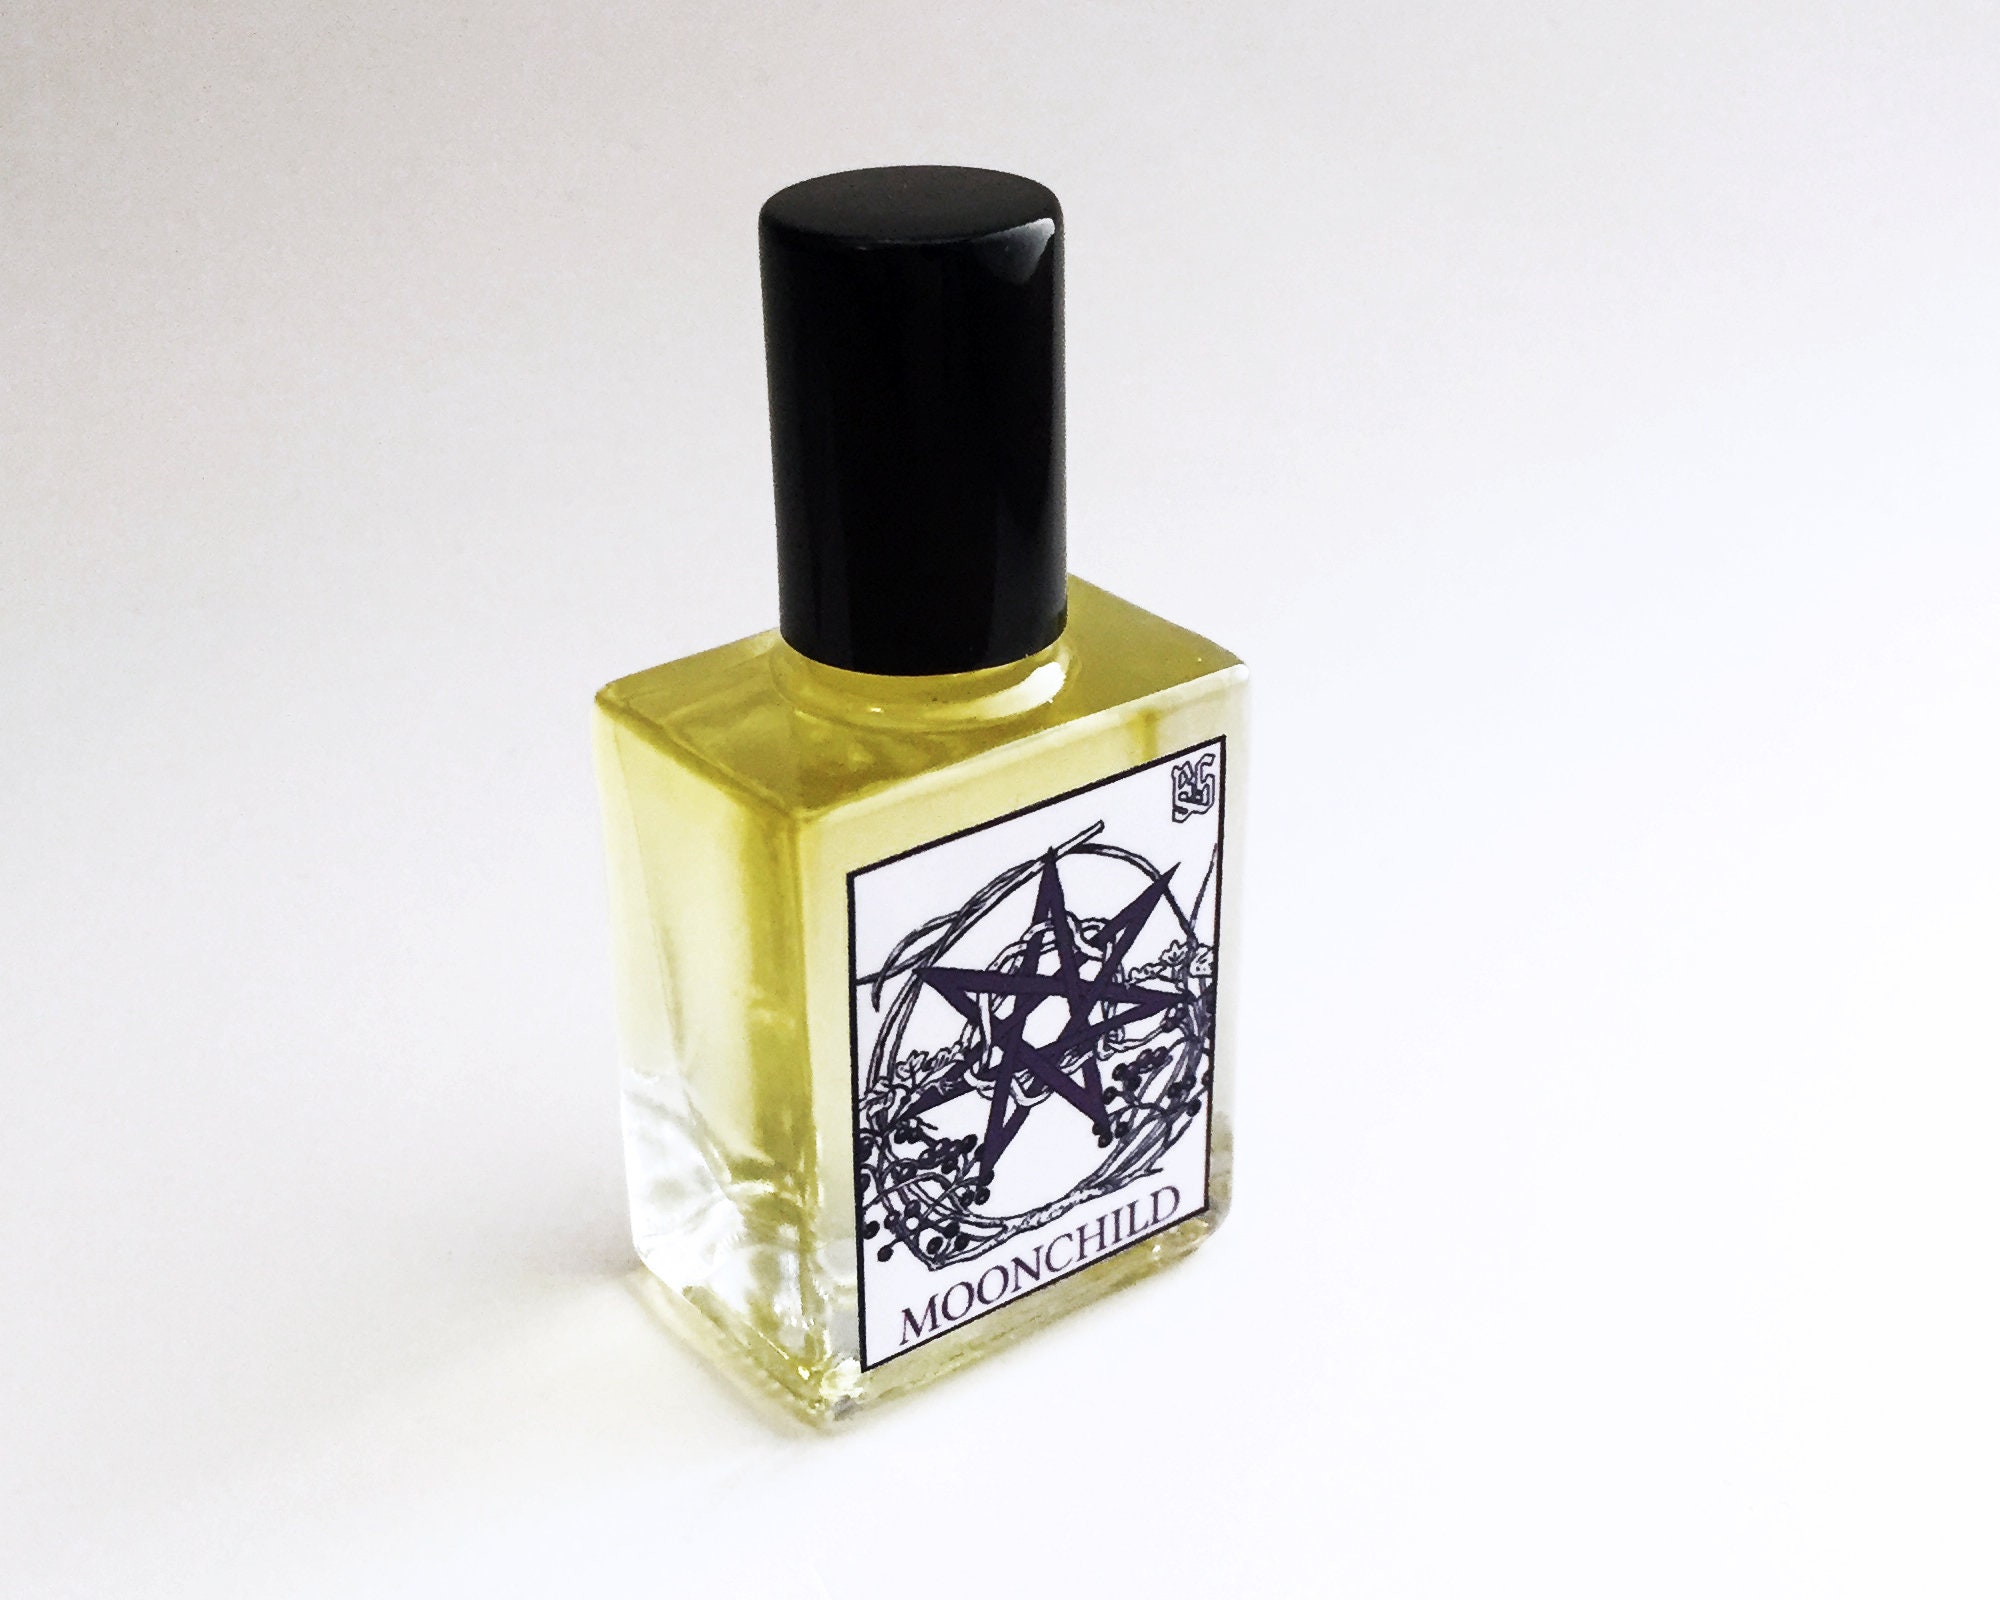 No. 19 Sandal Wood &amp; Patchouli Rituals Cologne - ein es Parfum für  Männer 2010